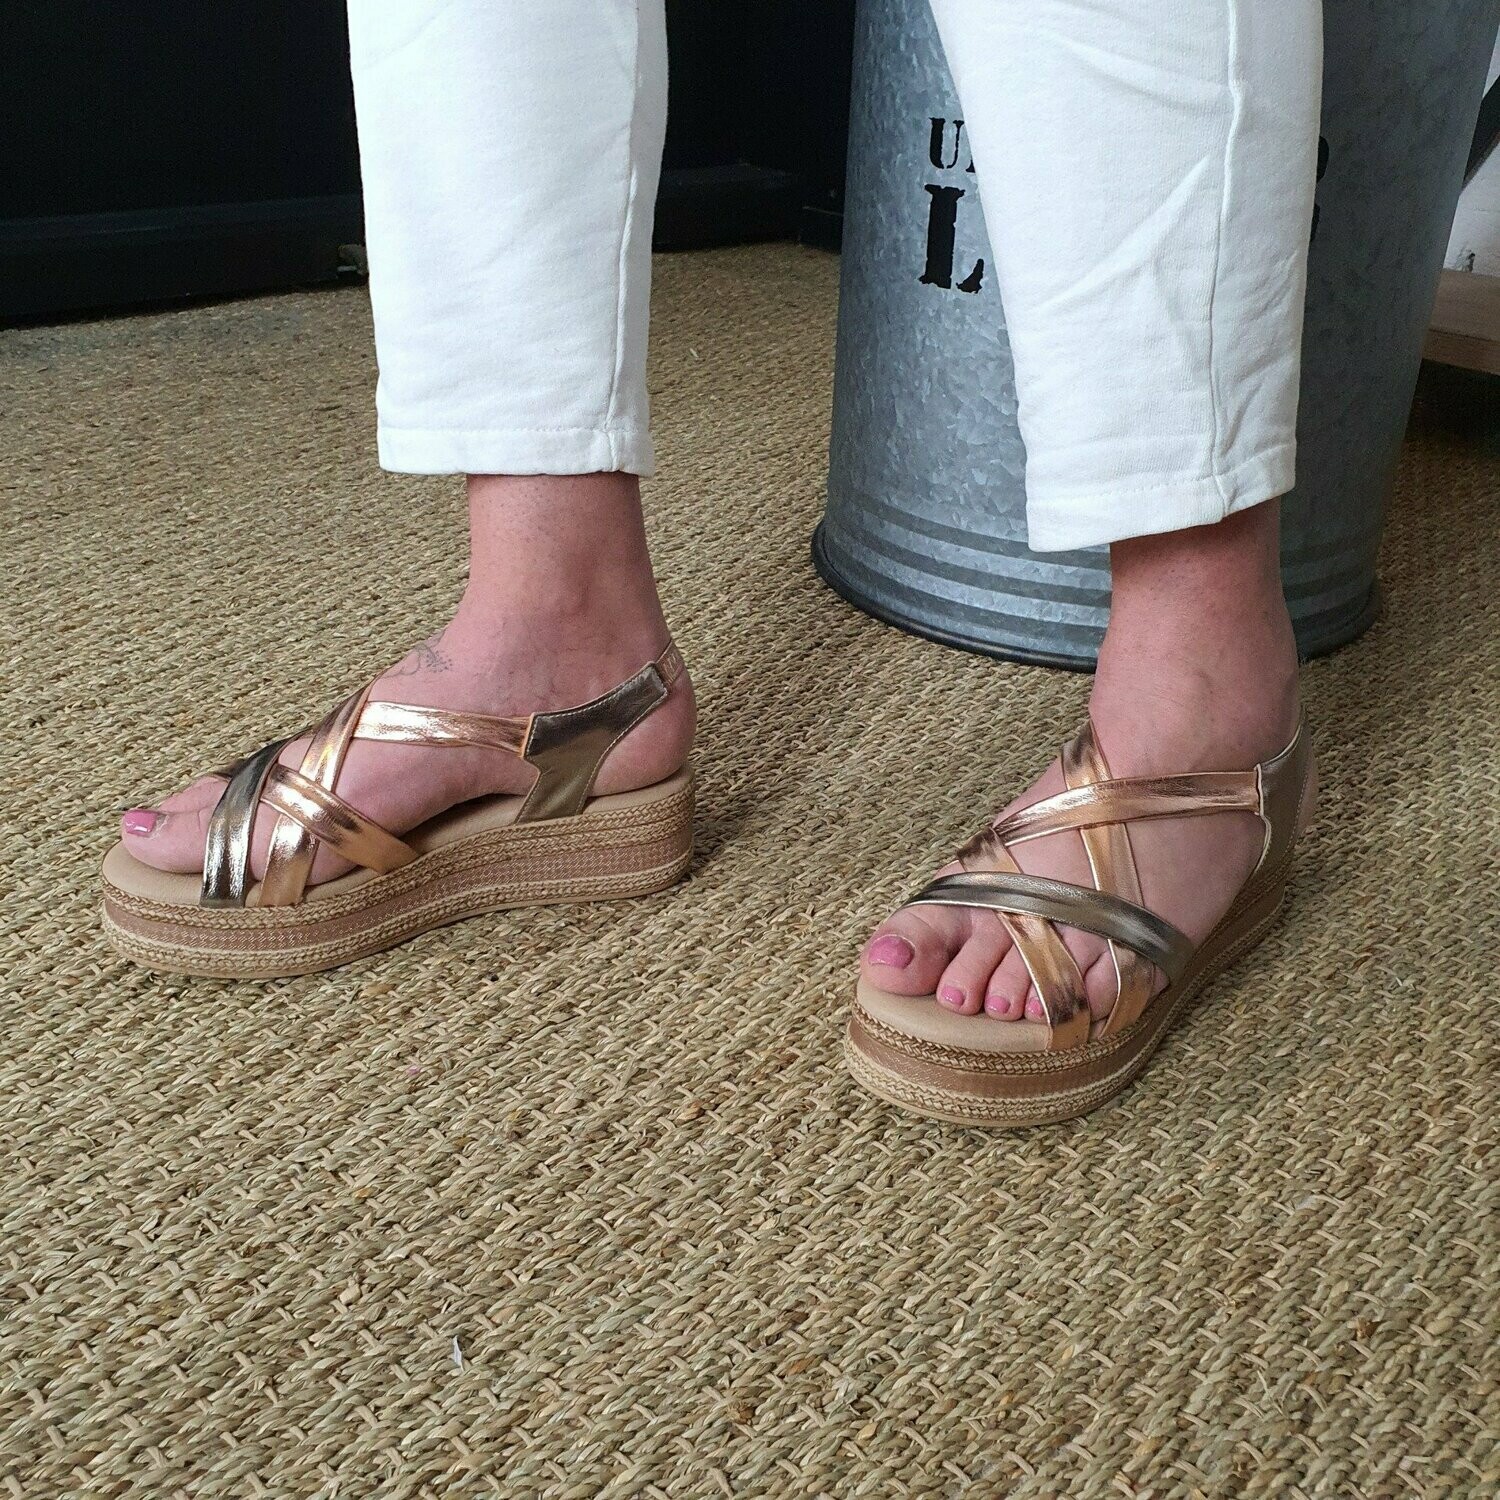 Sandales Compensées Elégance Dorée - Confort et style